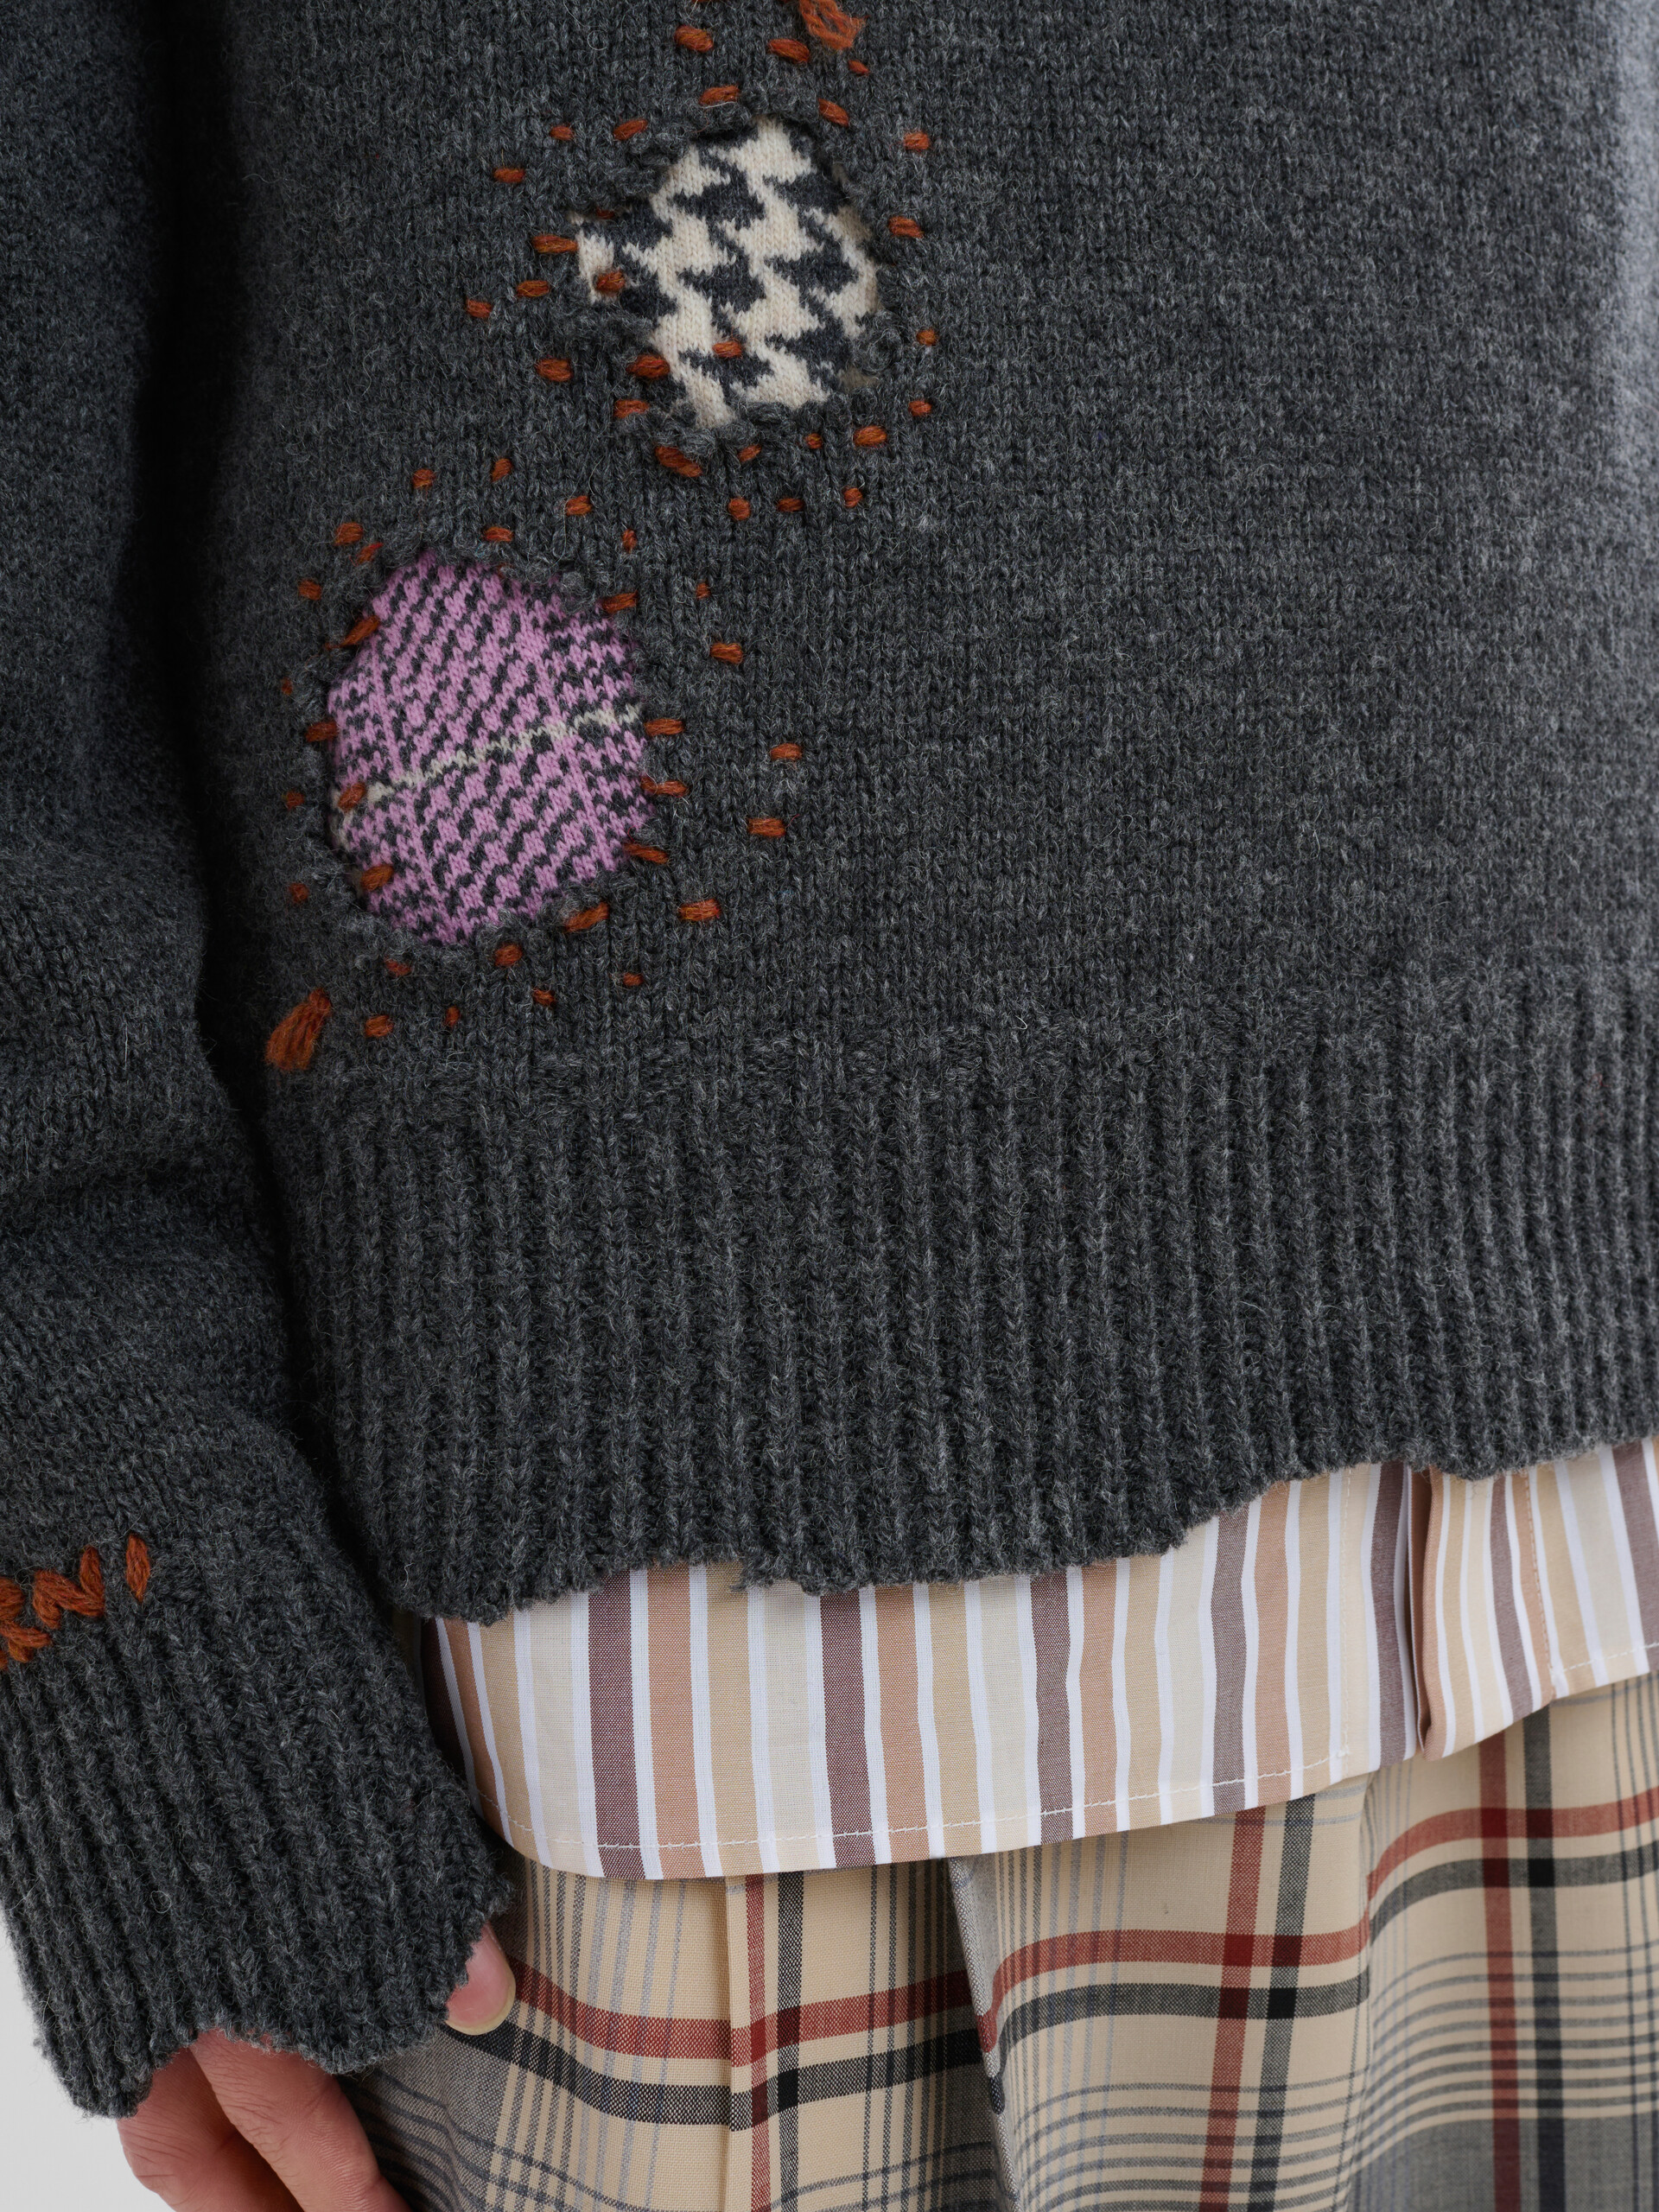 Jersey gris de lana Shetland con parches efecto remiendo Marni - jerseys - Image 5